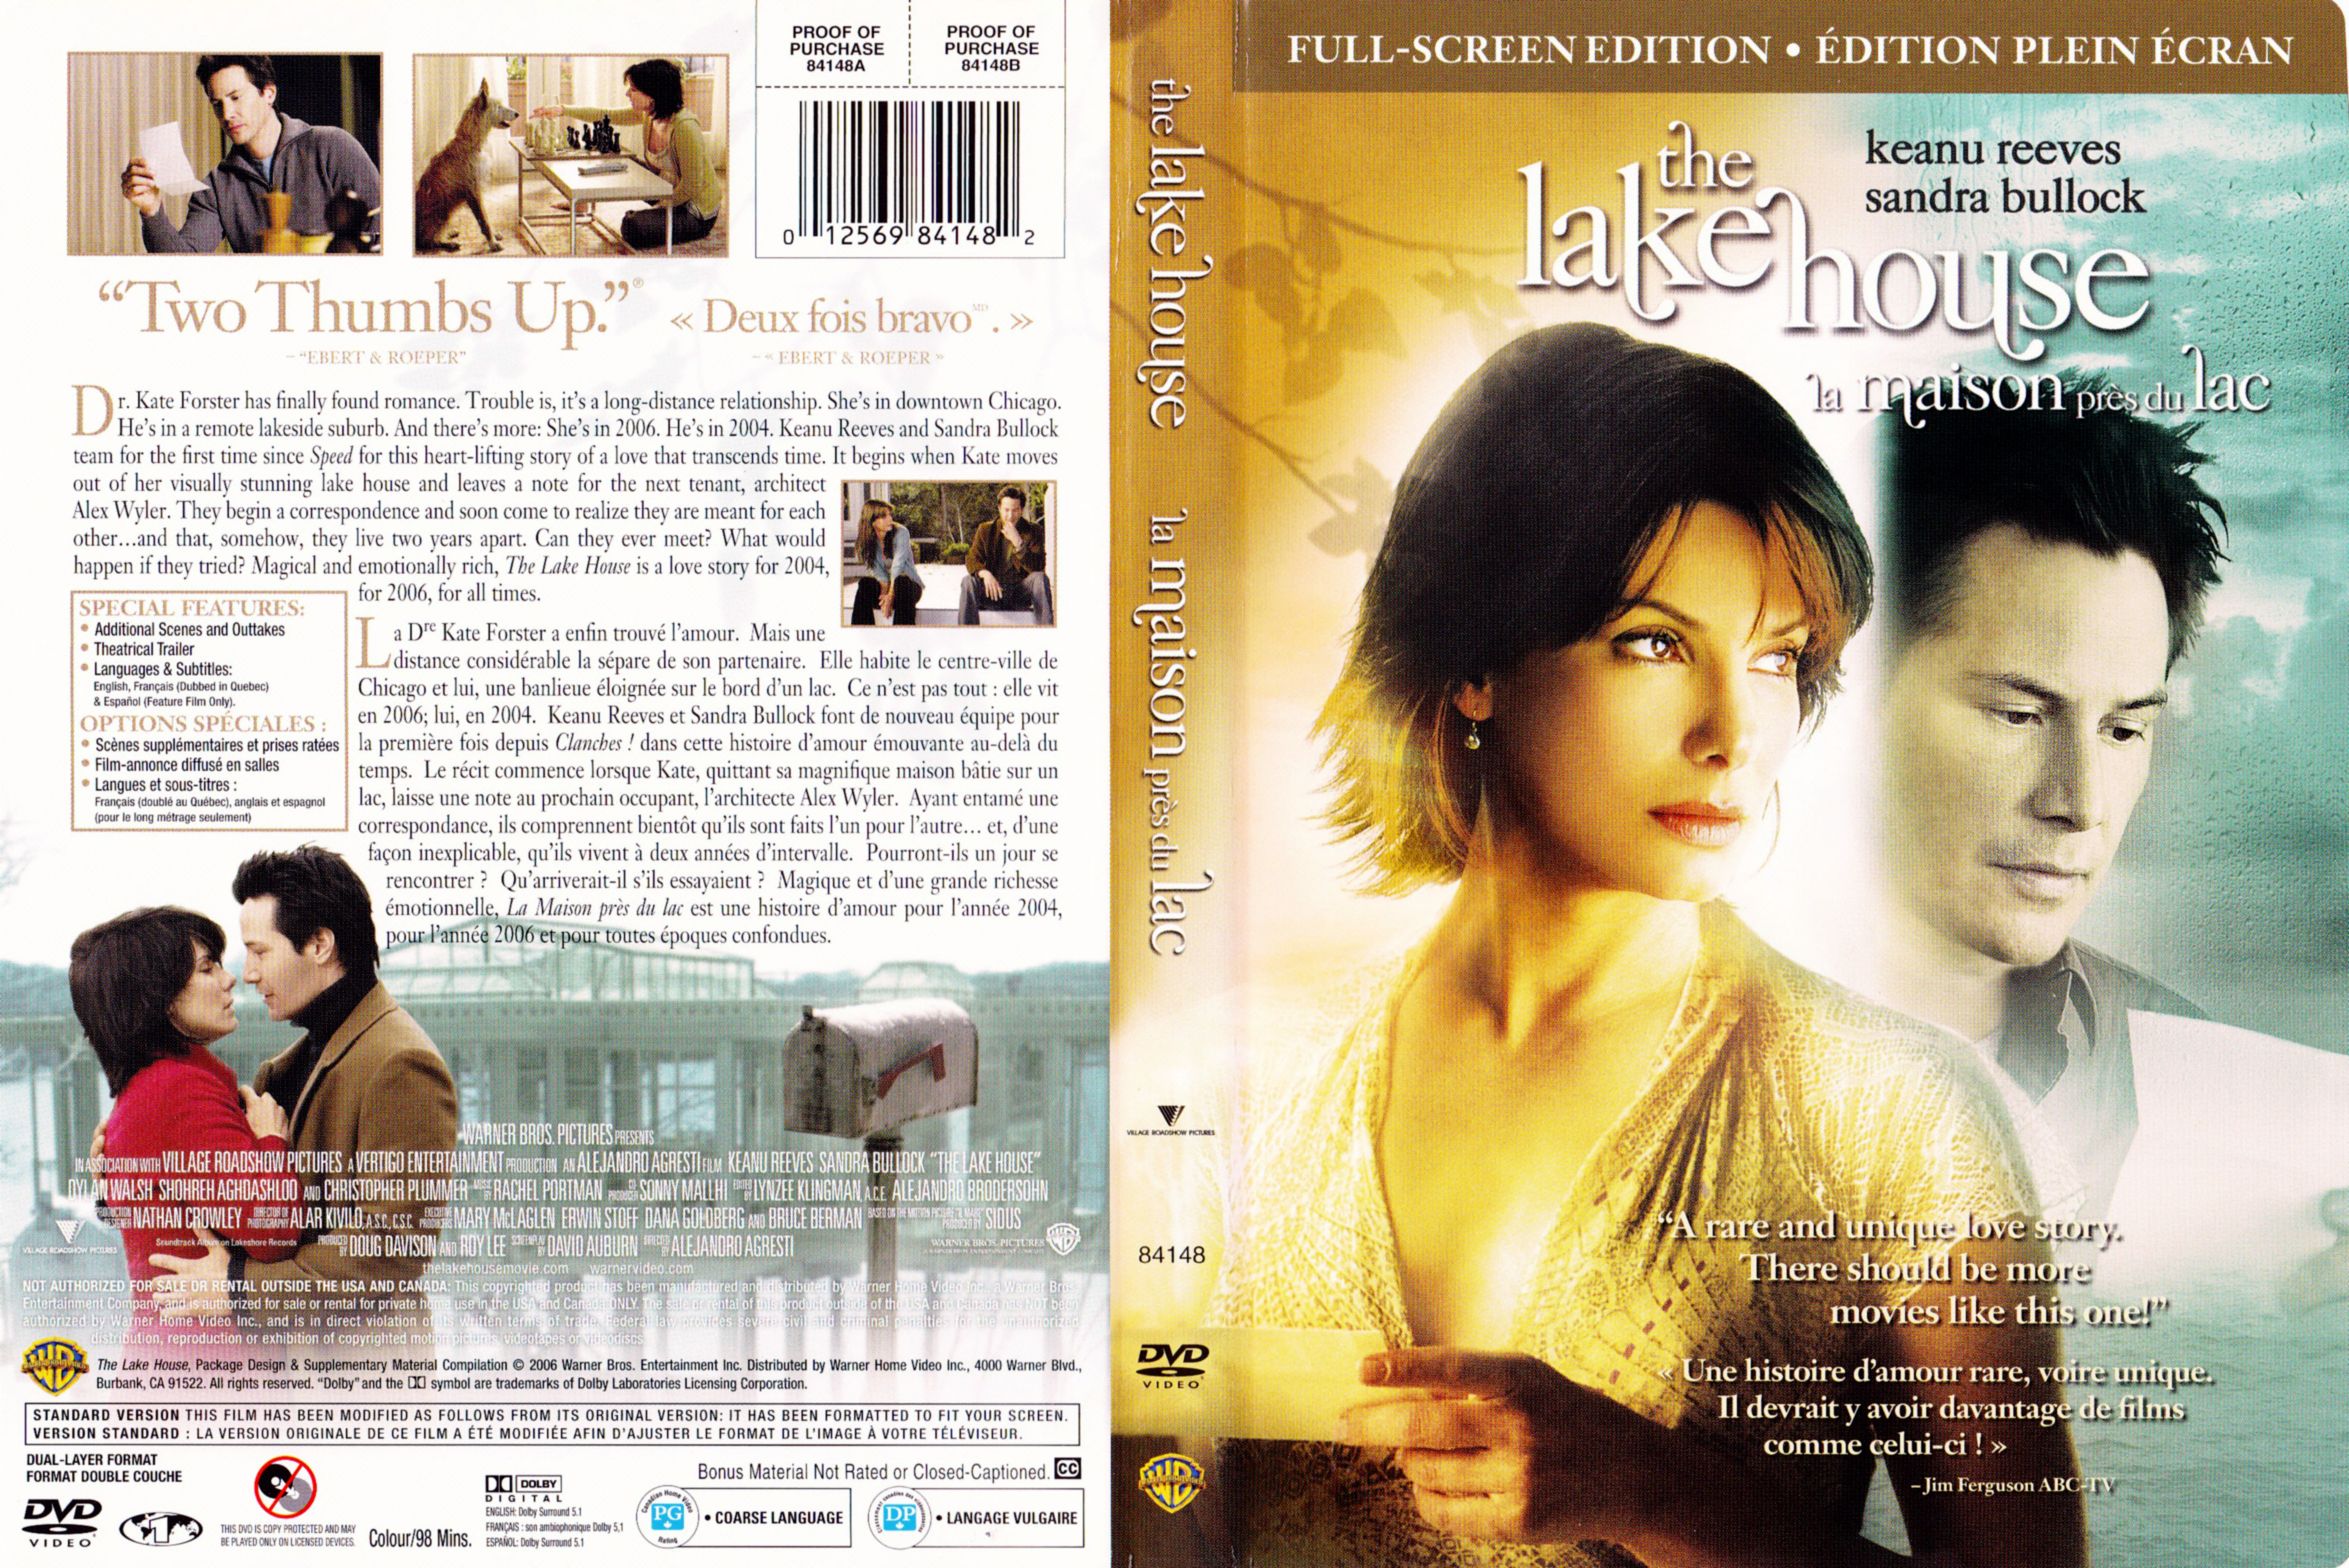 Jaquette DVD de La maison près du lac - The lake house (Canadienne) - Cinéma Passion3212 x 2144